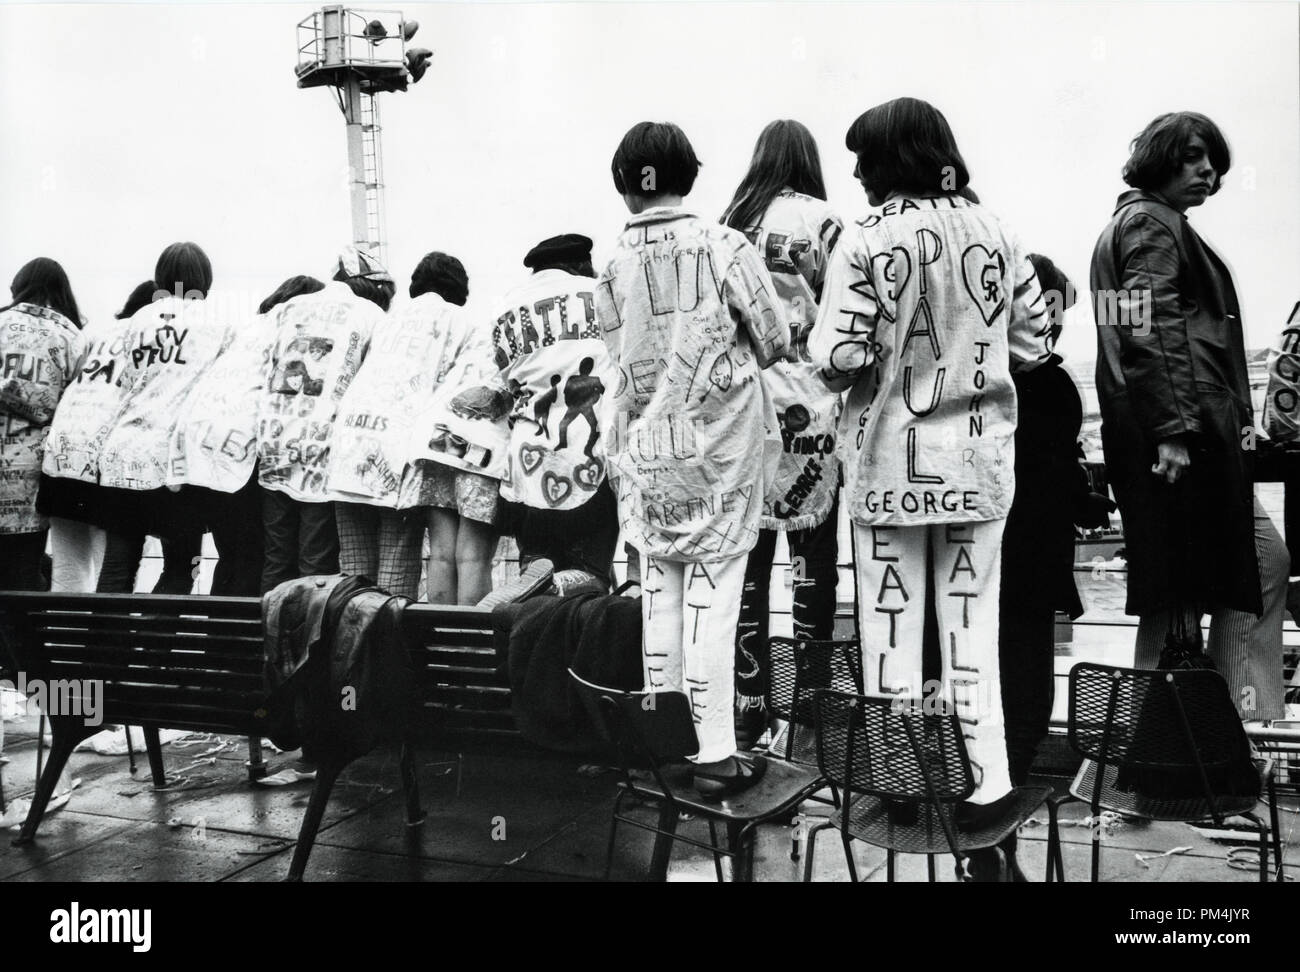 Beatles Fans am Londoner Flughafen, 1966. Datei Referenz Nr. 1013 110 THA © GFS/Hollywood Archiv - Alle Rechte vorbehalten. Stockfoto